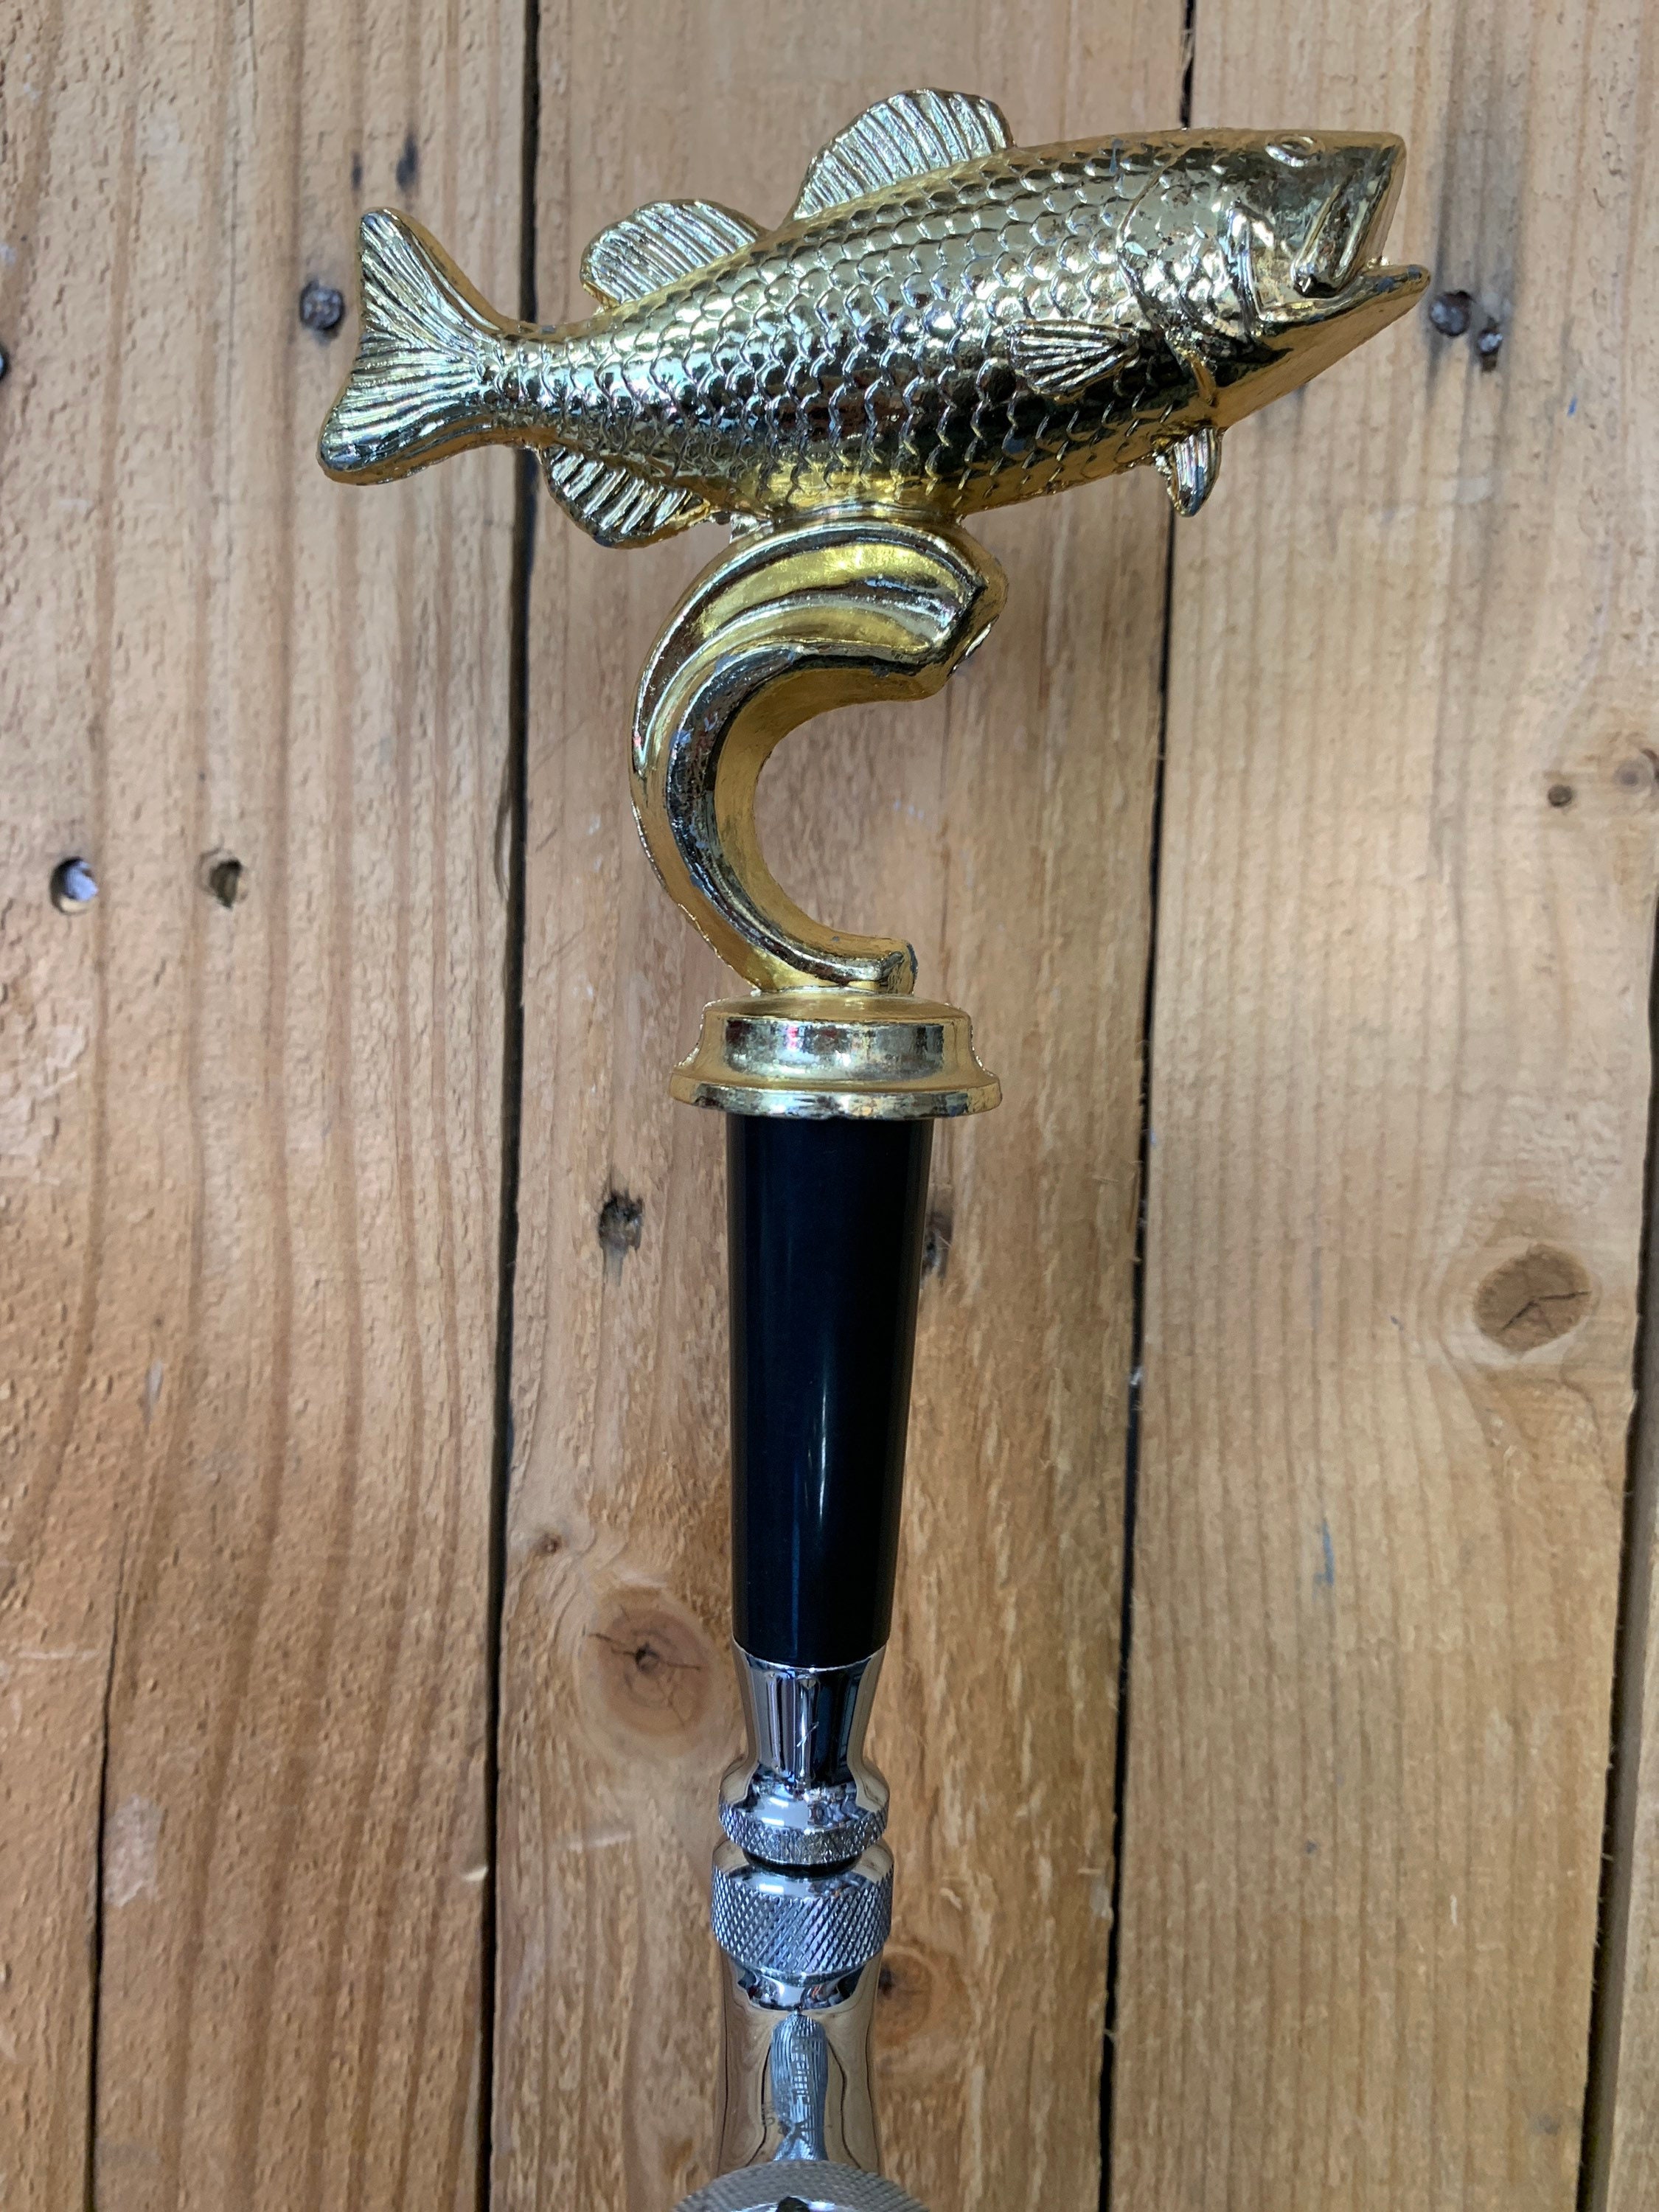 Bass Fishing Beer Tap Handle Draft Kegerator Home Bar Custom Faucet Knob Lever 